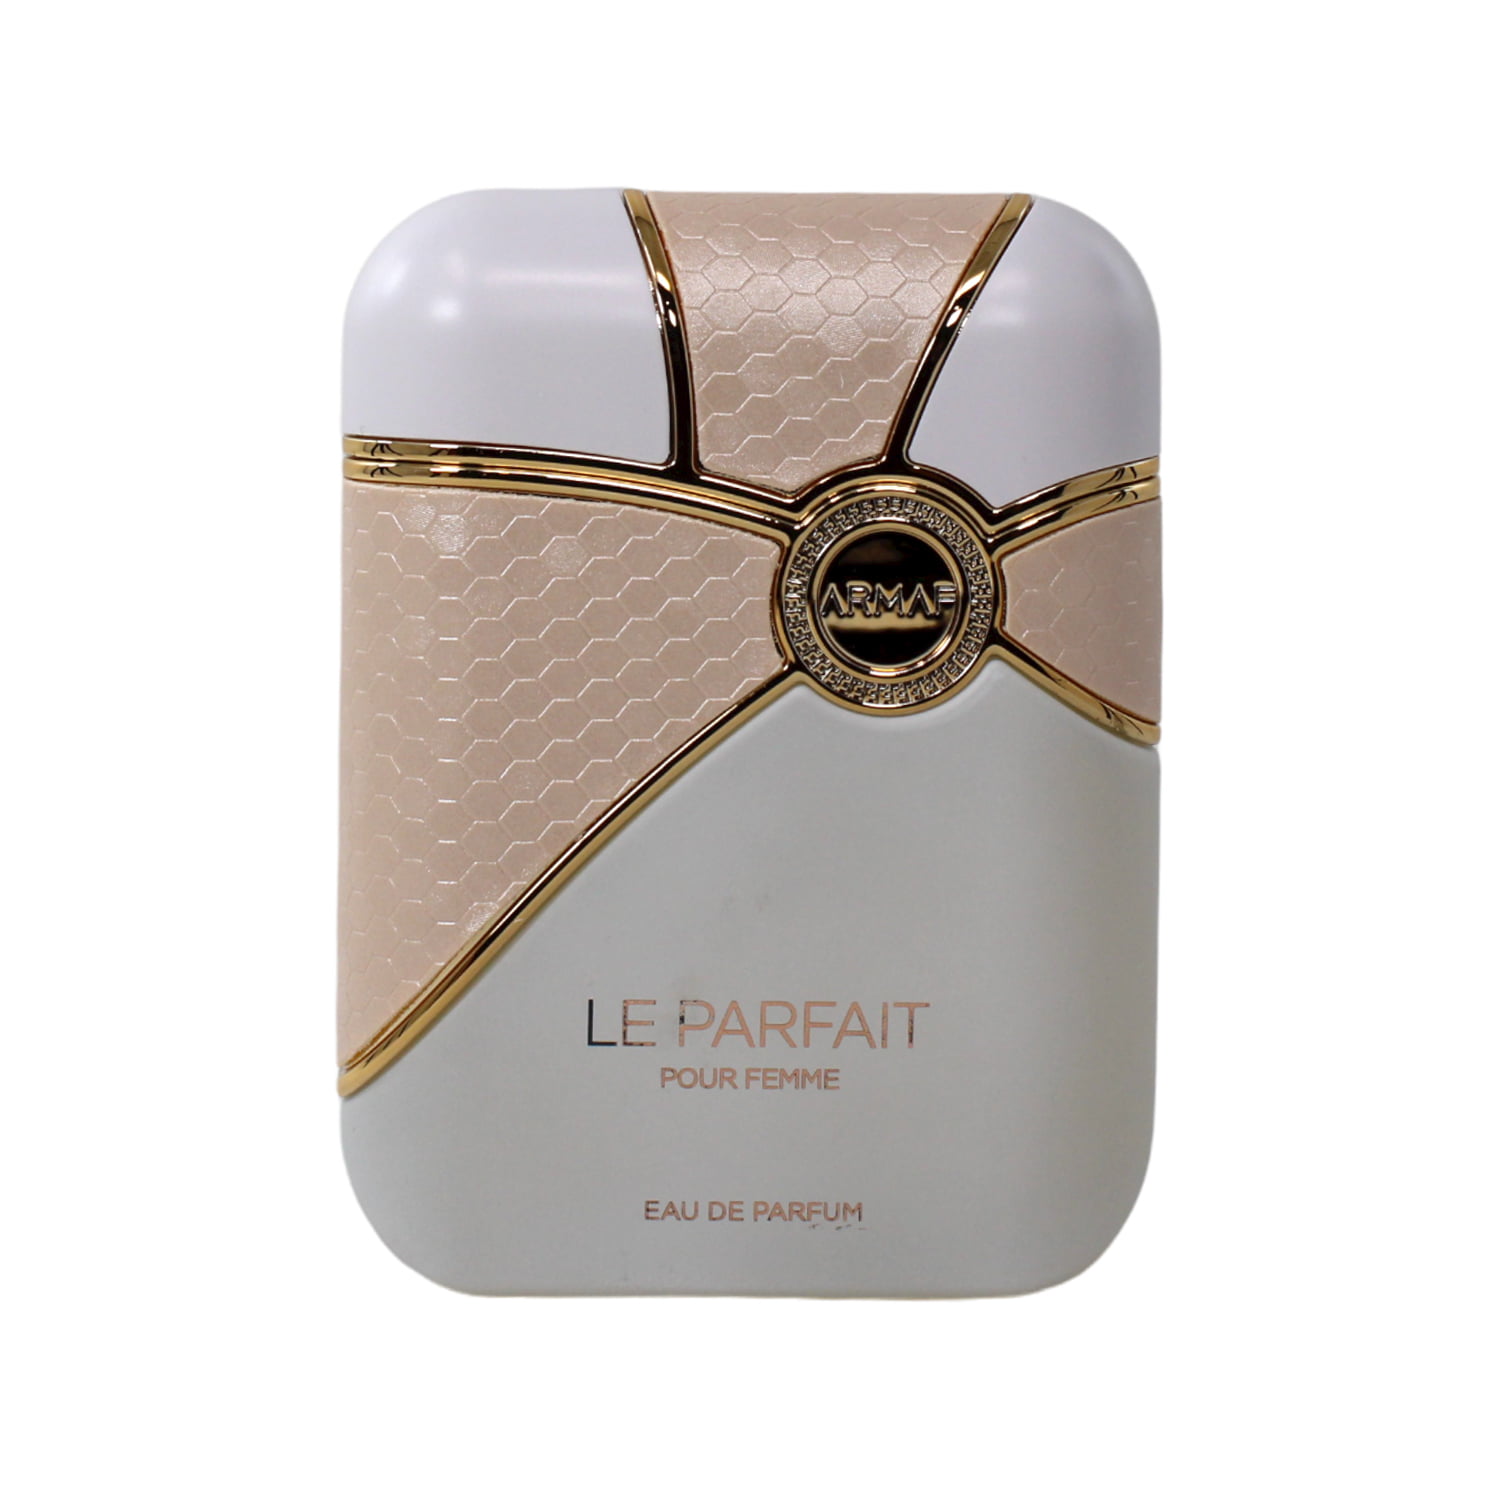 Le Parfait by Armaf, 3.4 oz Eau De Parfum Spray for Women